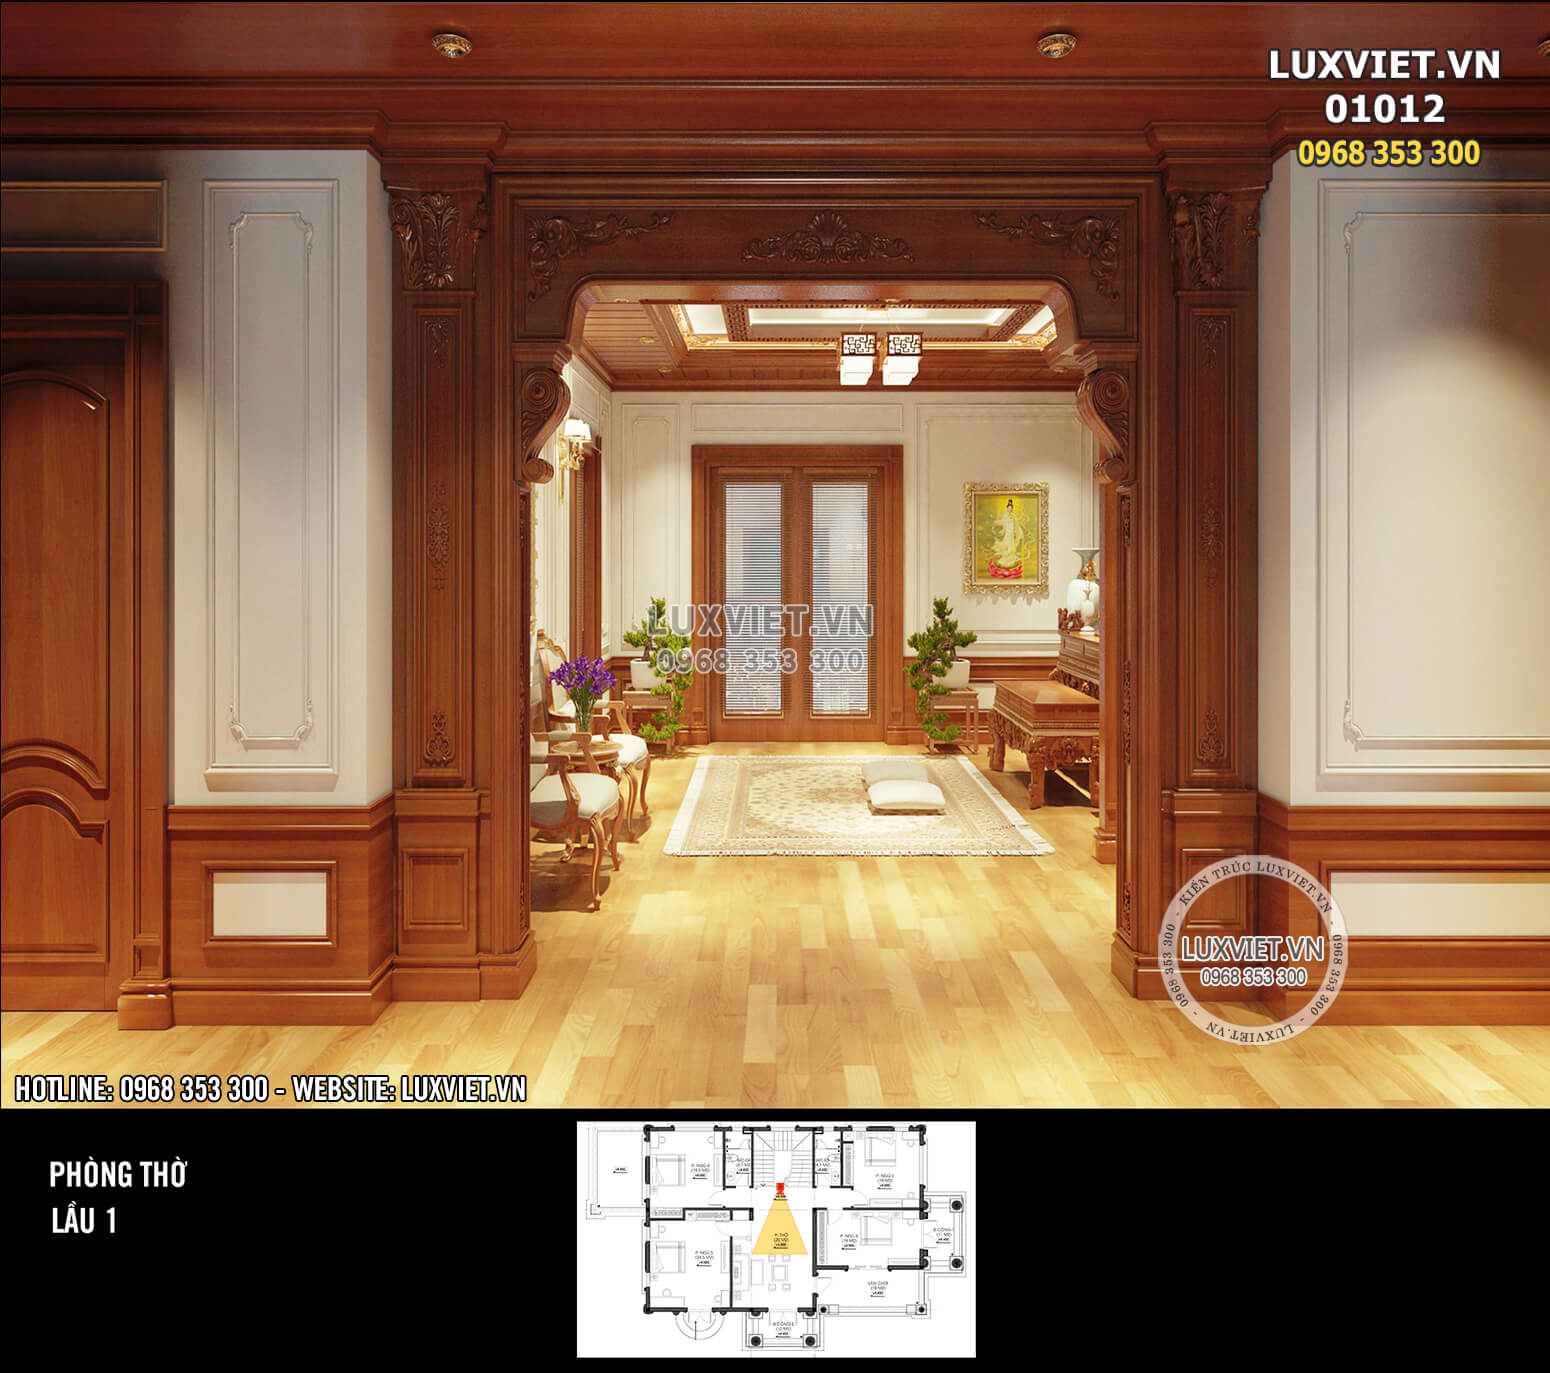 Hình ảnh: Góc view hướng vào phòng thờ của căn nhà - Nội thất ốp gỗ tân cổ điển